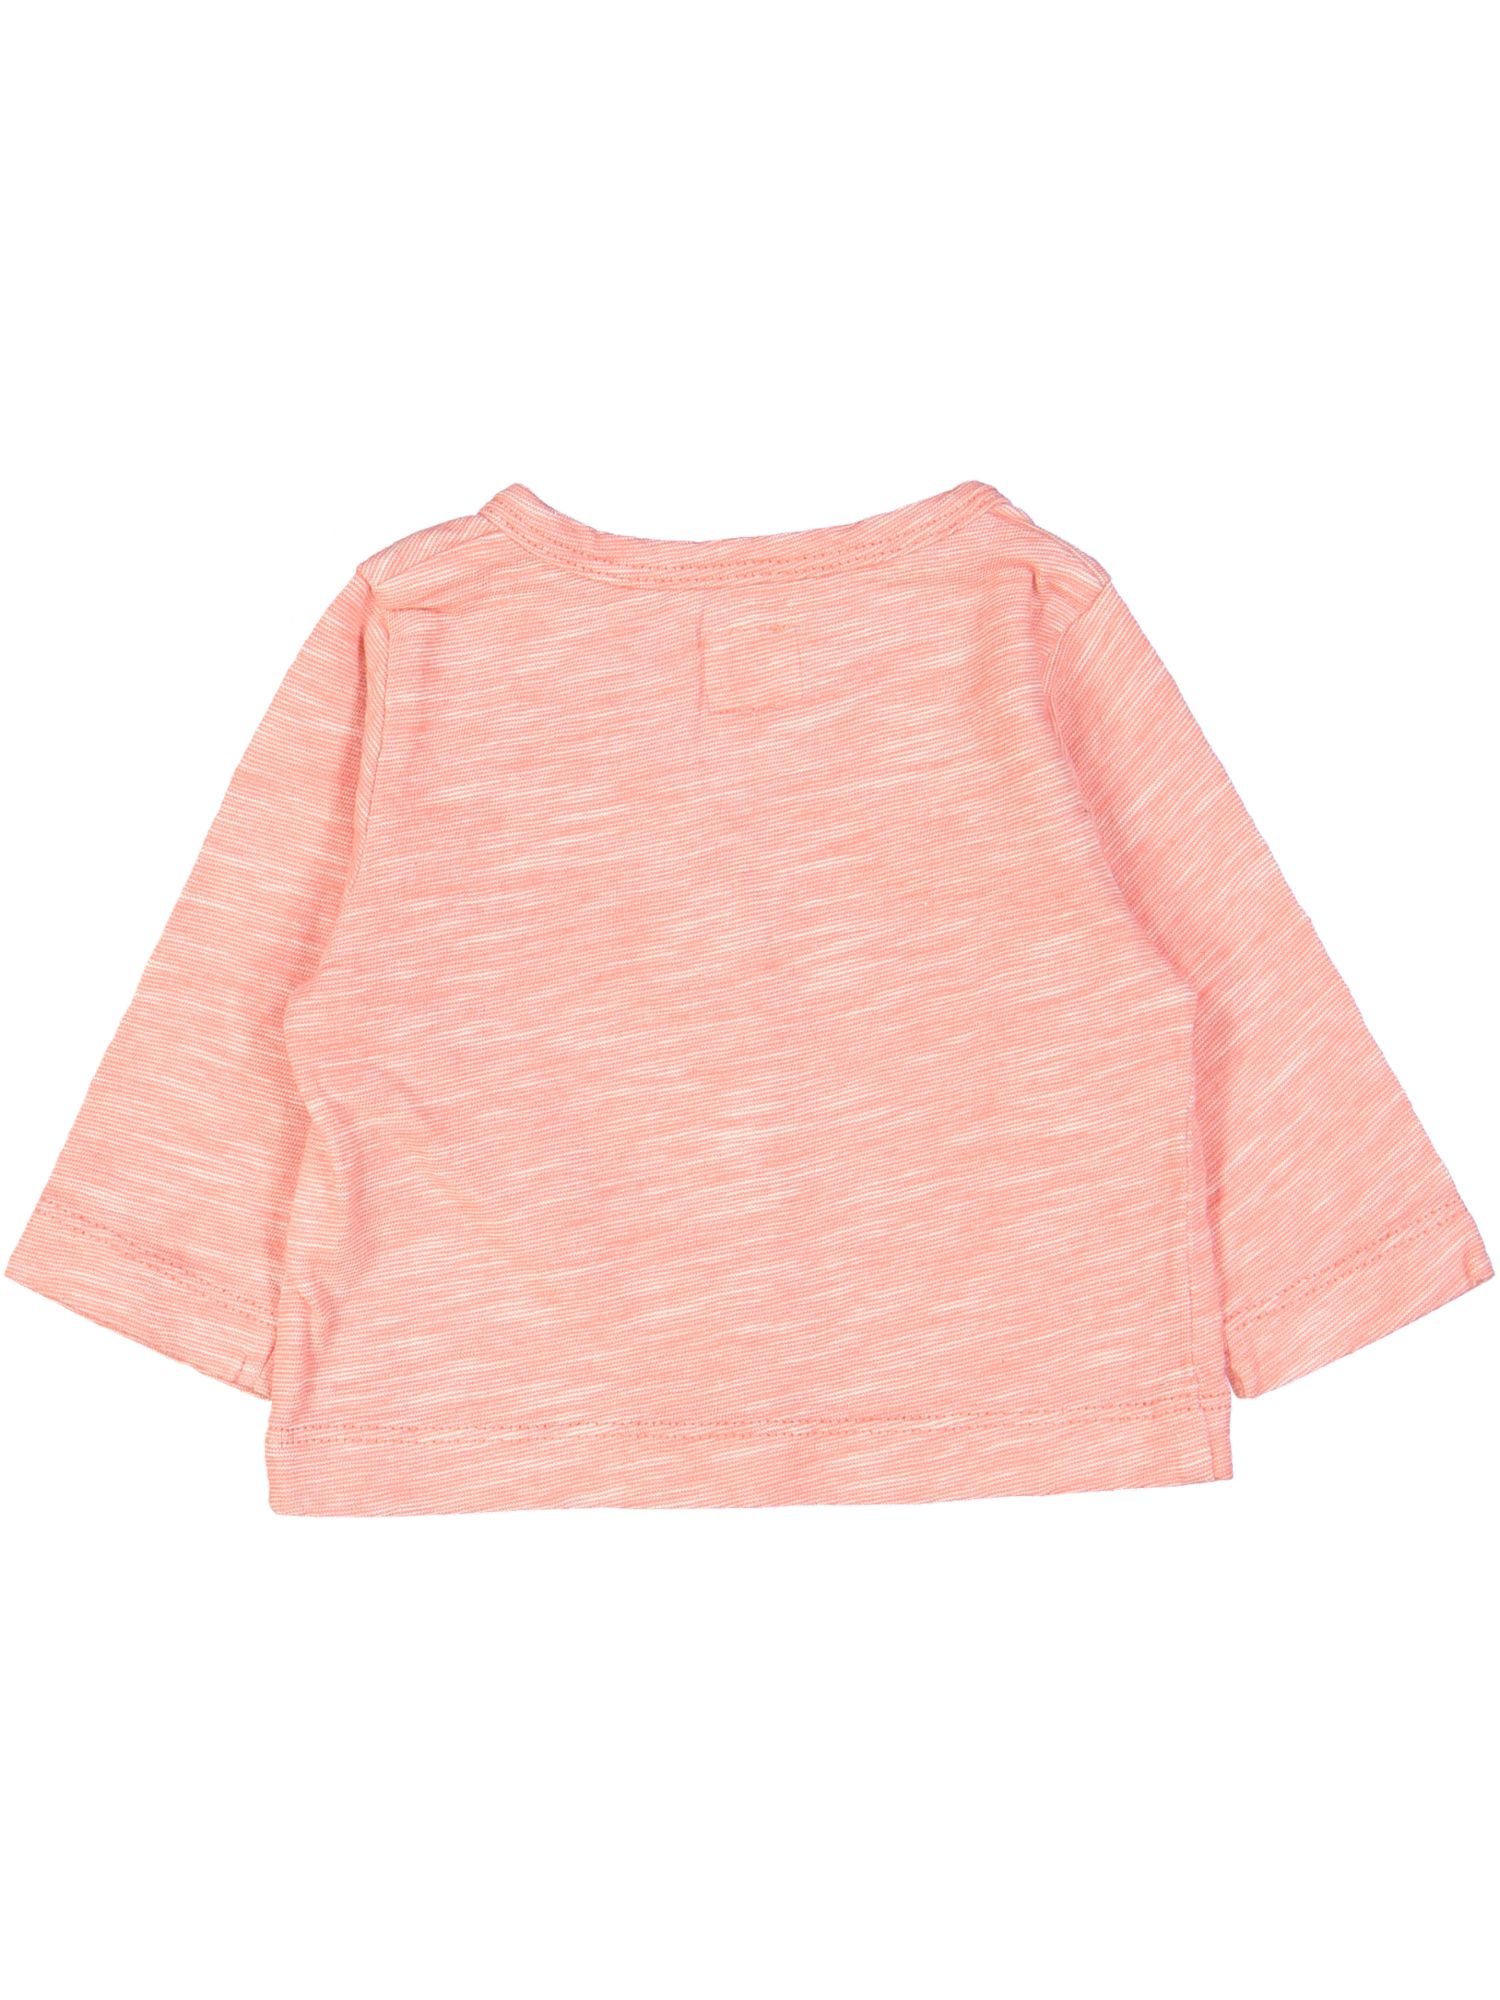 gilet tricot roze chiné 01m